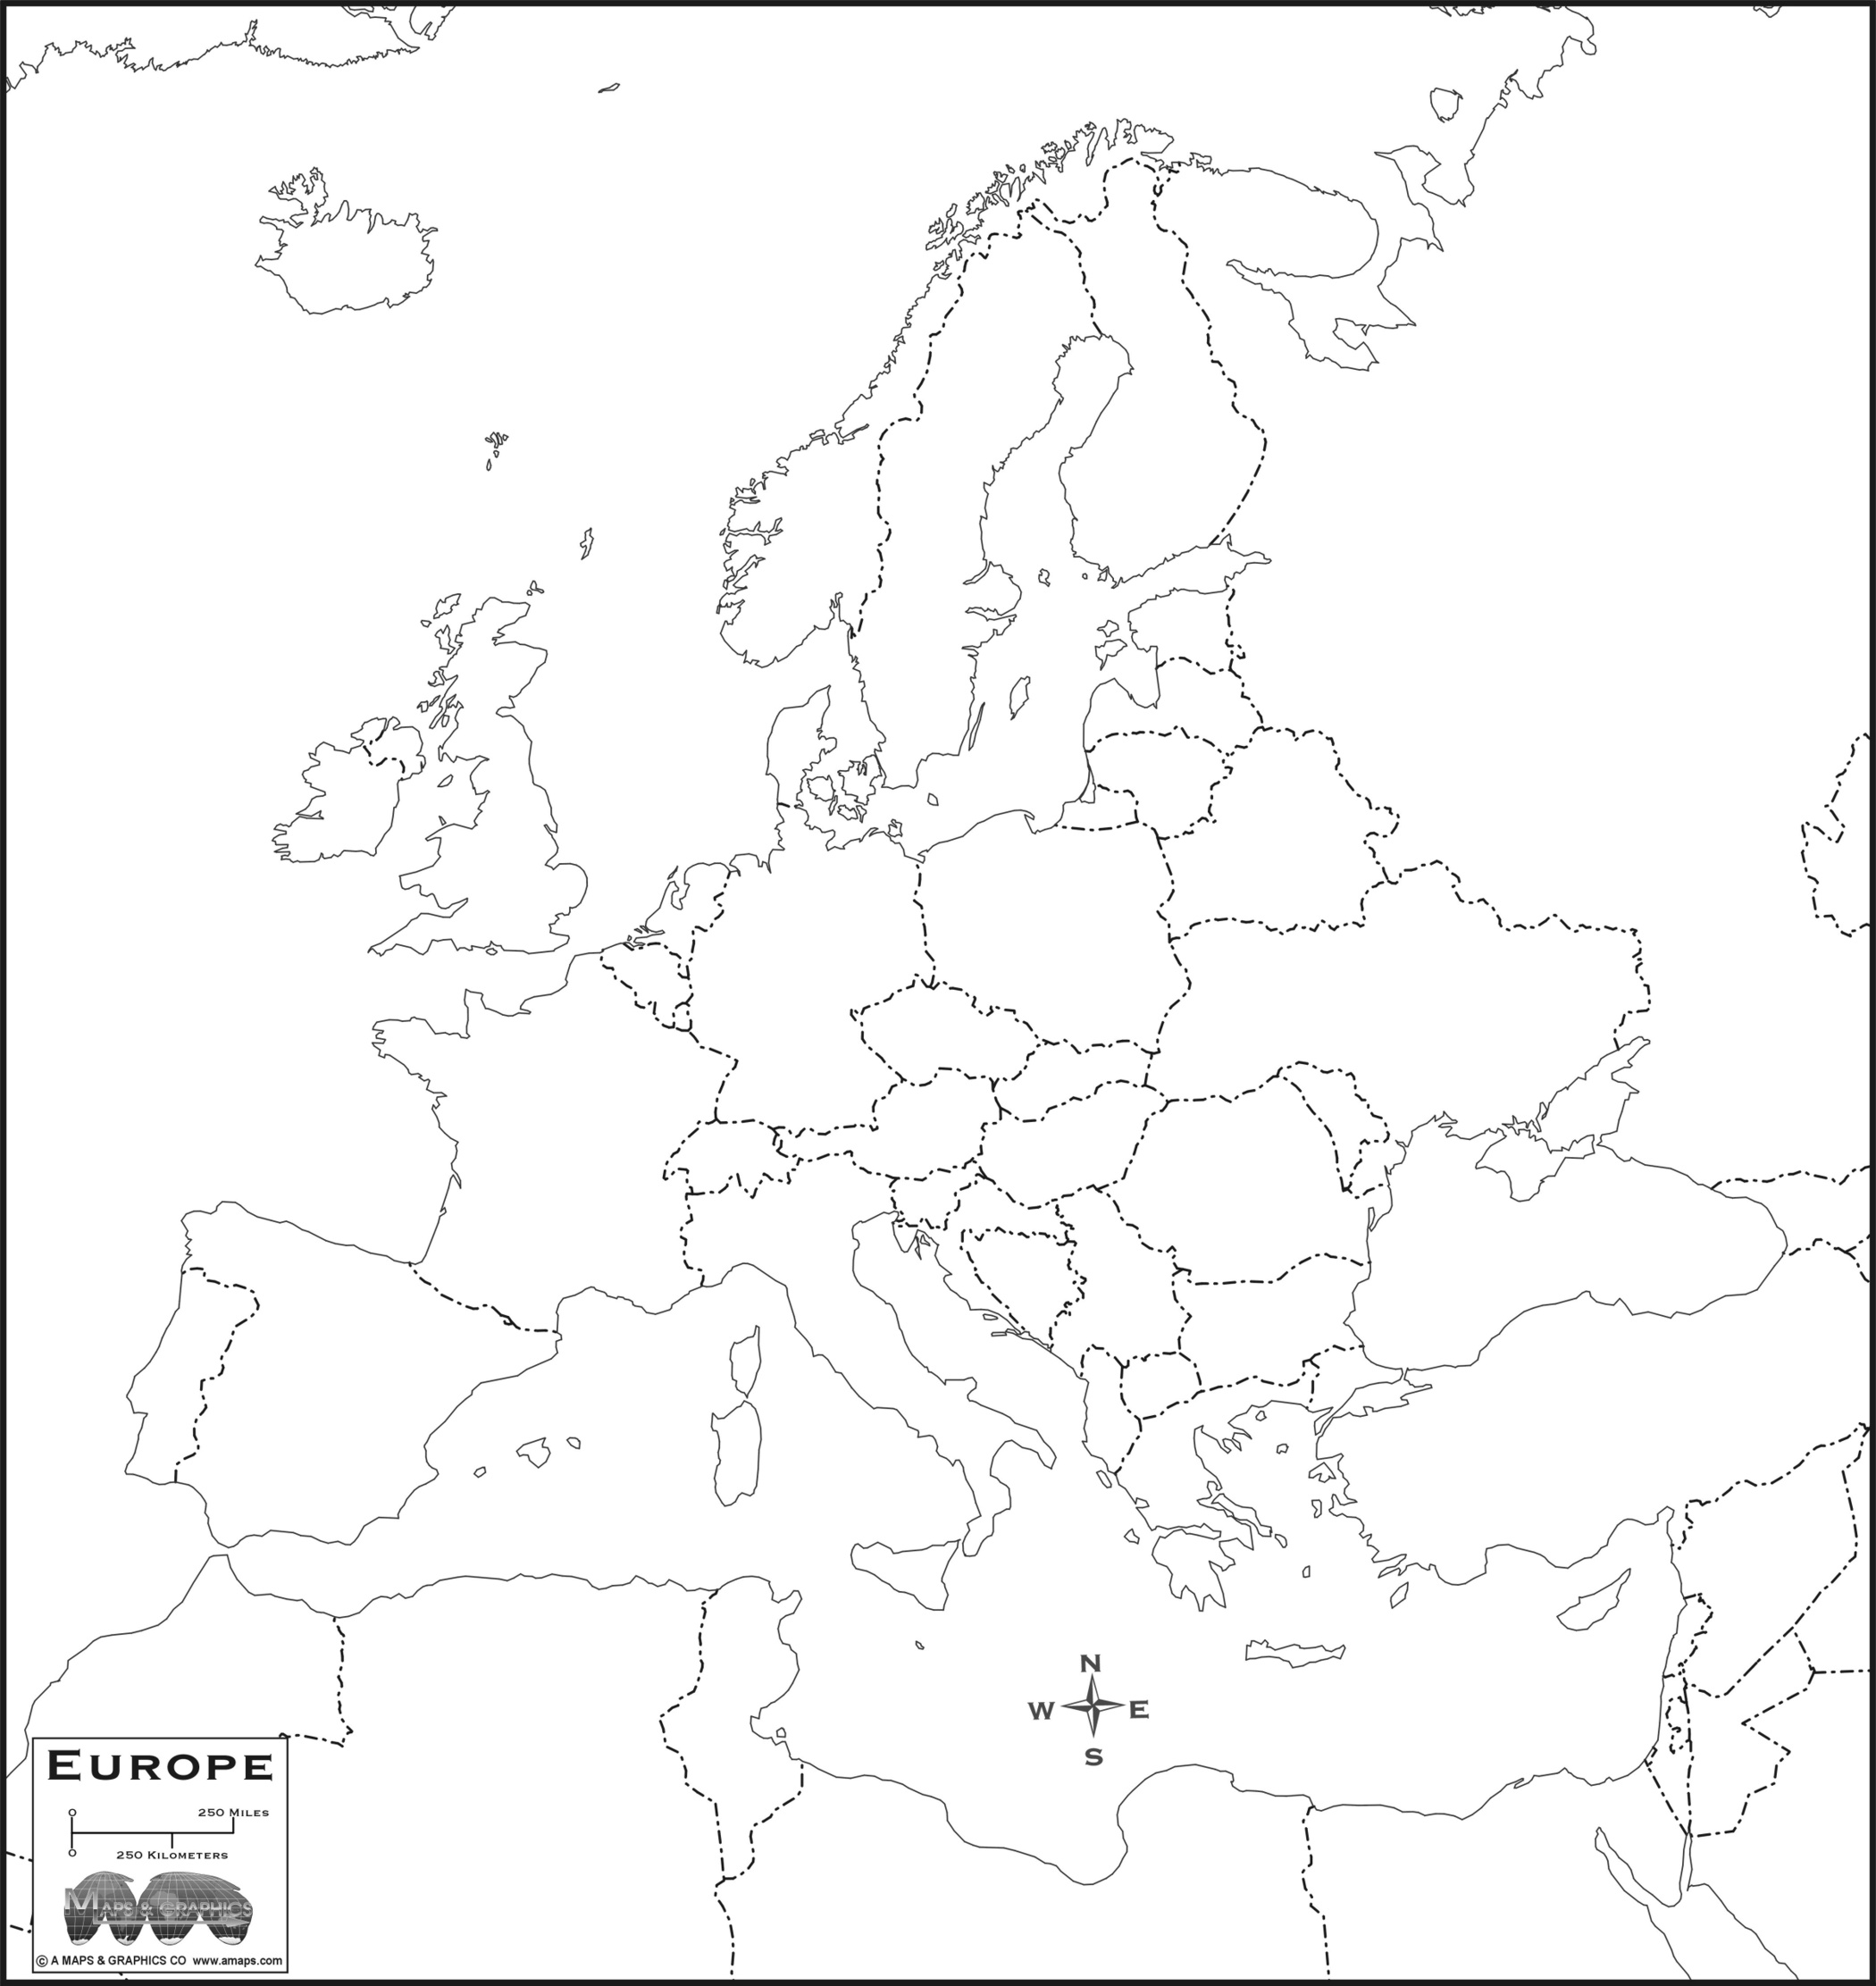 FREE MAP OF EUROPE